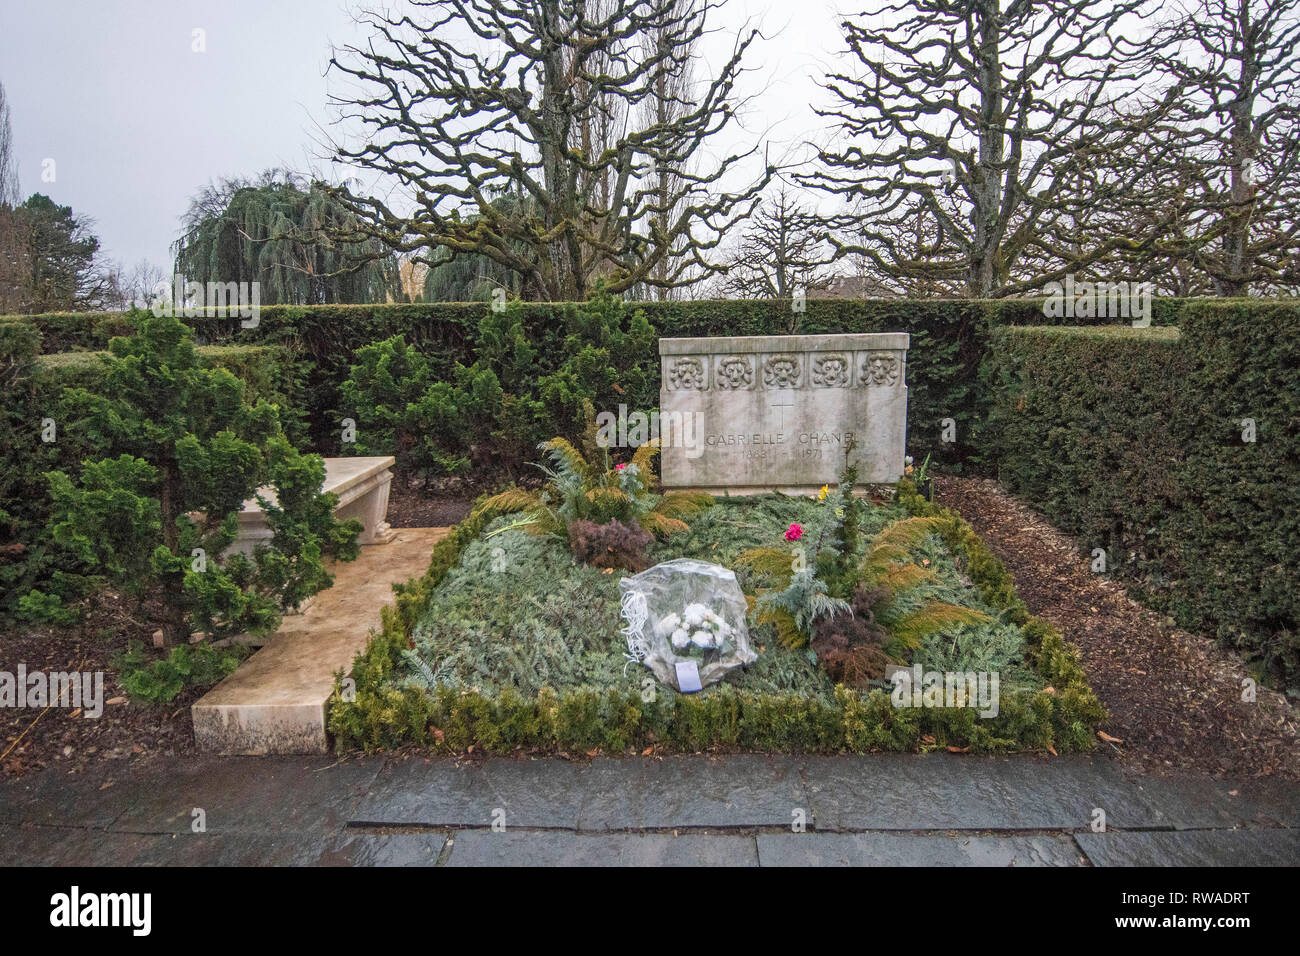 Das Grab von Gabreille "Coco" Chanel in der Cimetière du Bois-de-Vaux  Friedhof in Lausanne, Waadt, Schweiz mit fünf steinernen Löwen auf dem  Grabstein Stockfotografie - Alamy